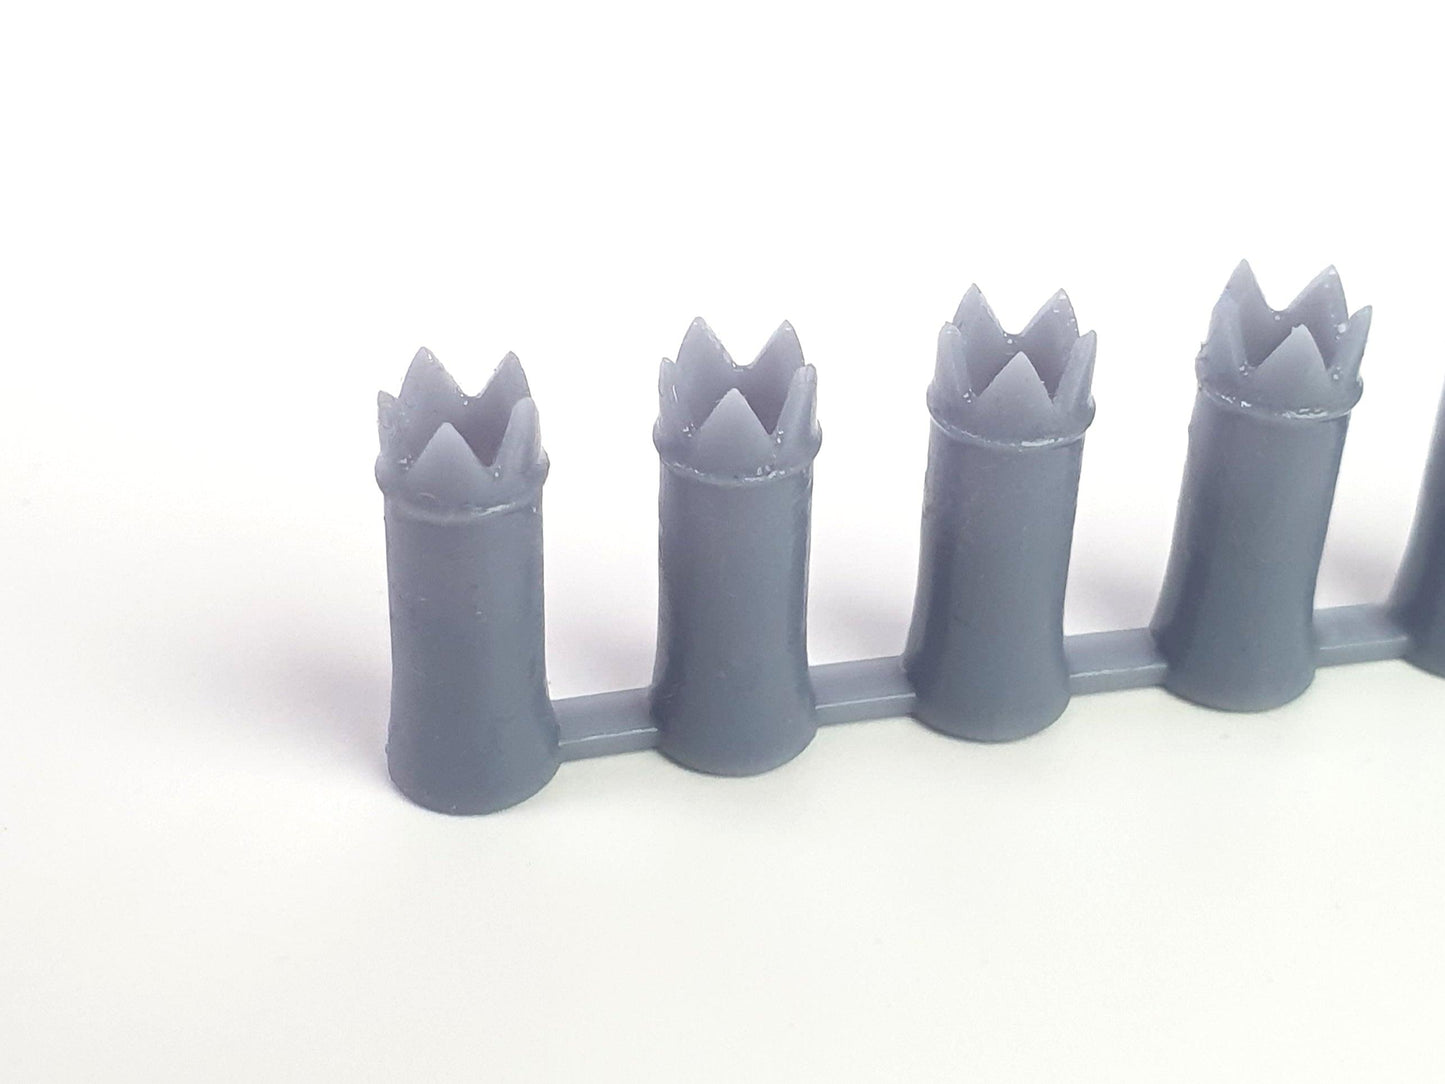 O gauge, 7mm, scale model round crown chimney pots - Three Peaks Models